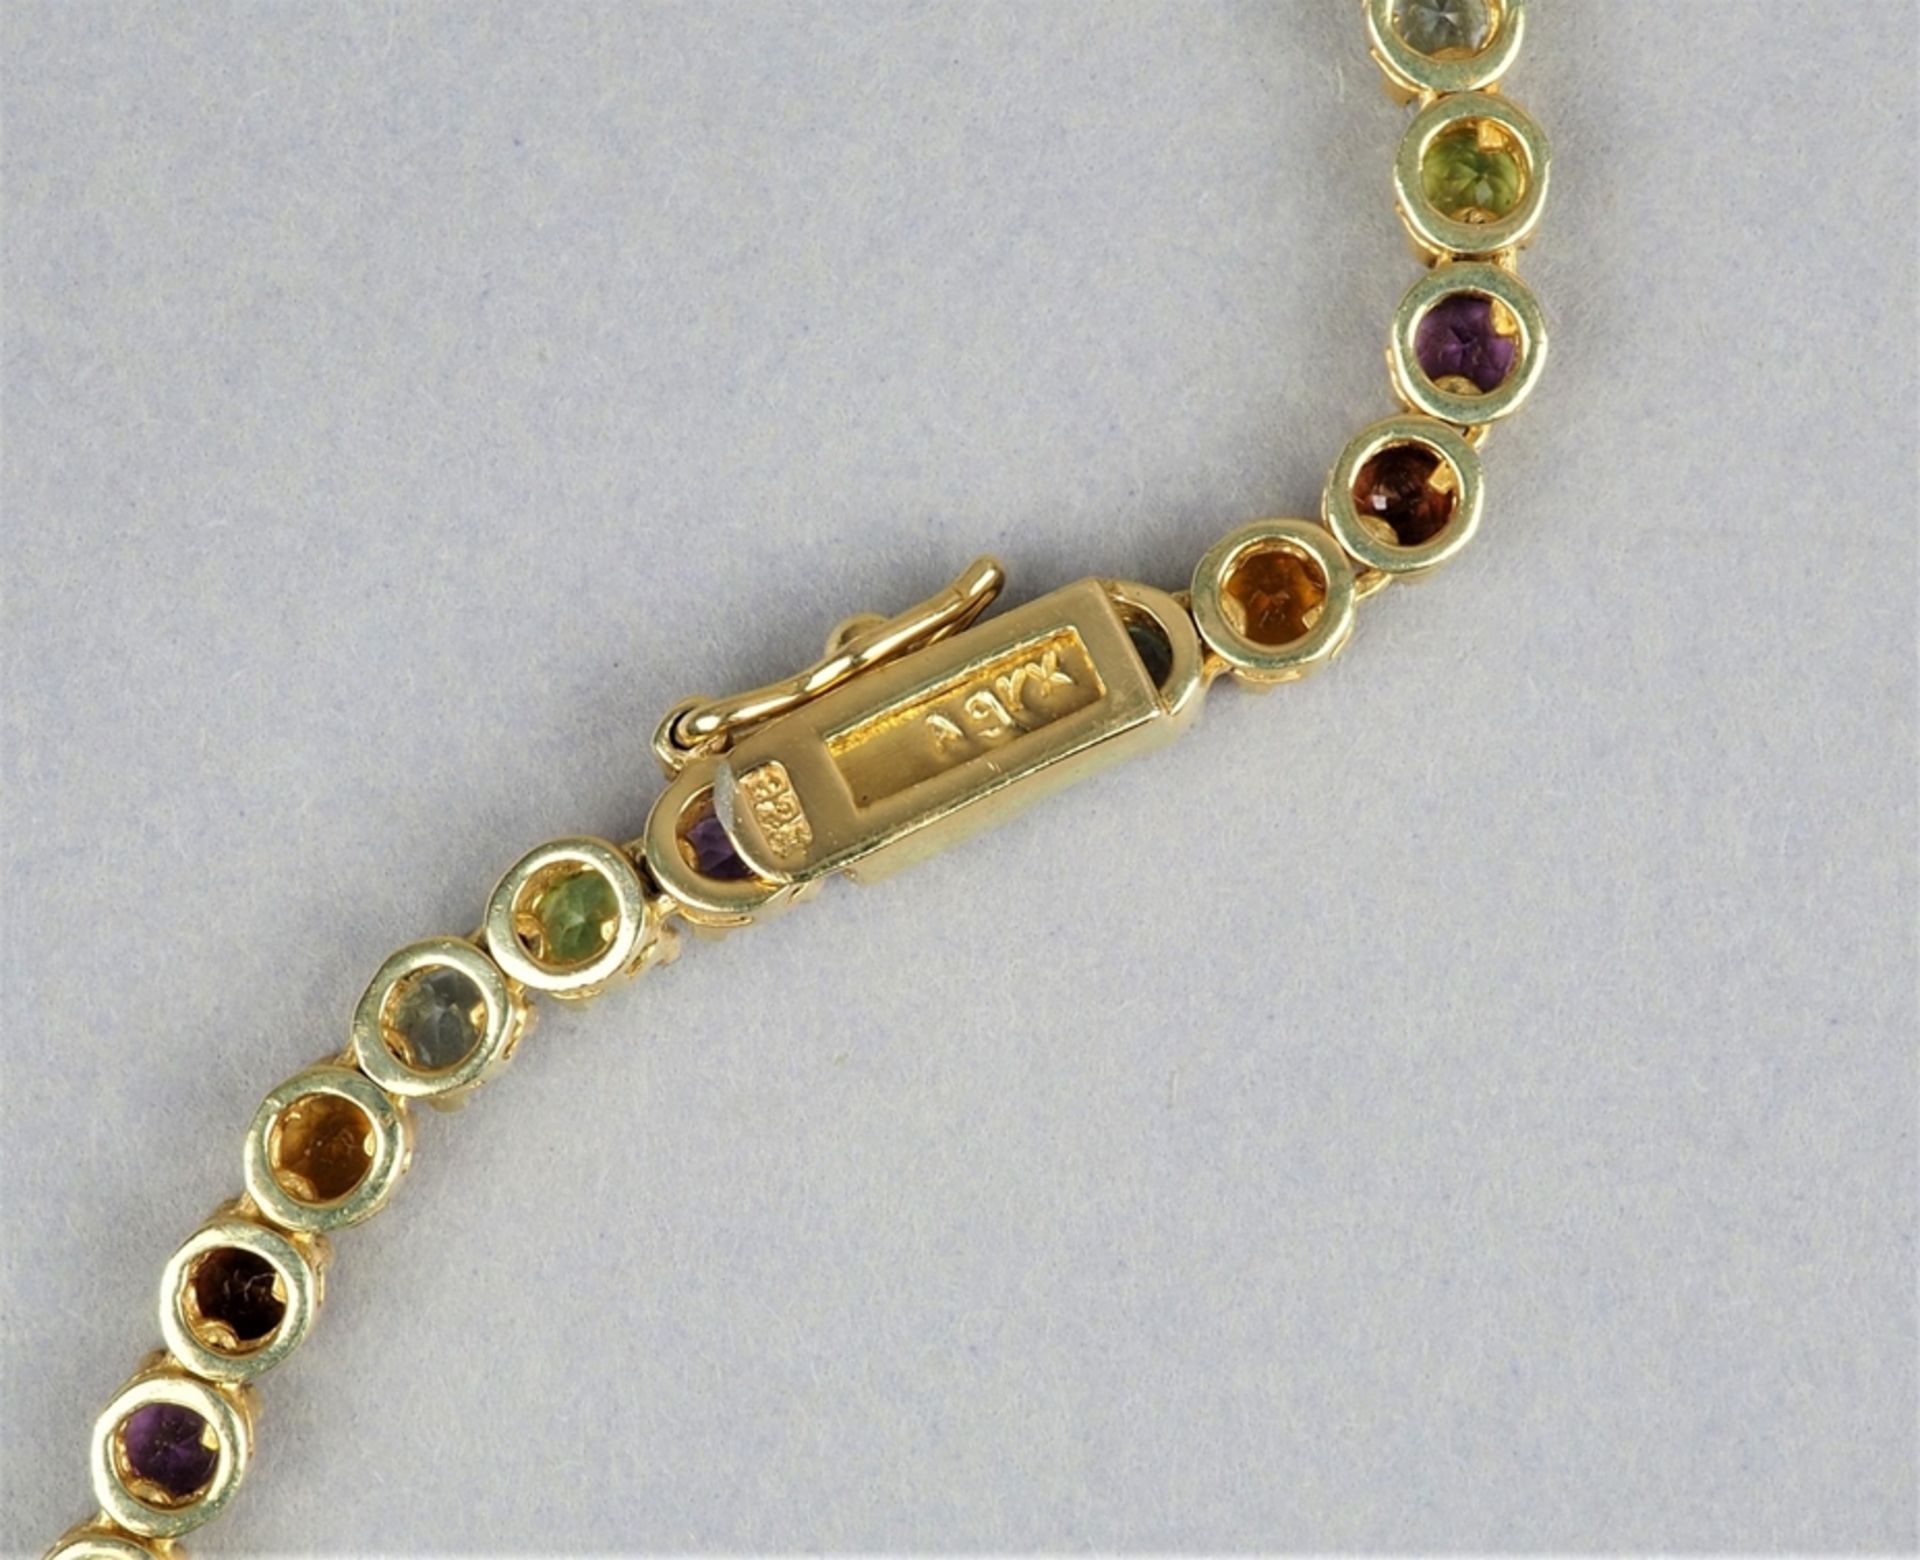 Silber-Halskette vergoldet mit buntem Edelsteinbesatz (23,2g Gesamtgewicht) - Bild 2 aus 2